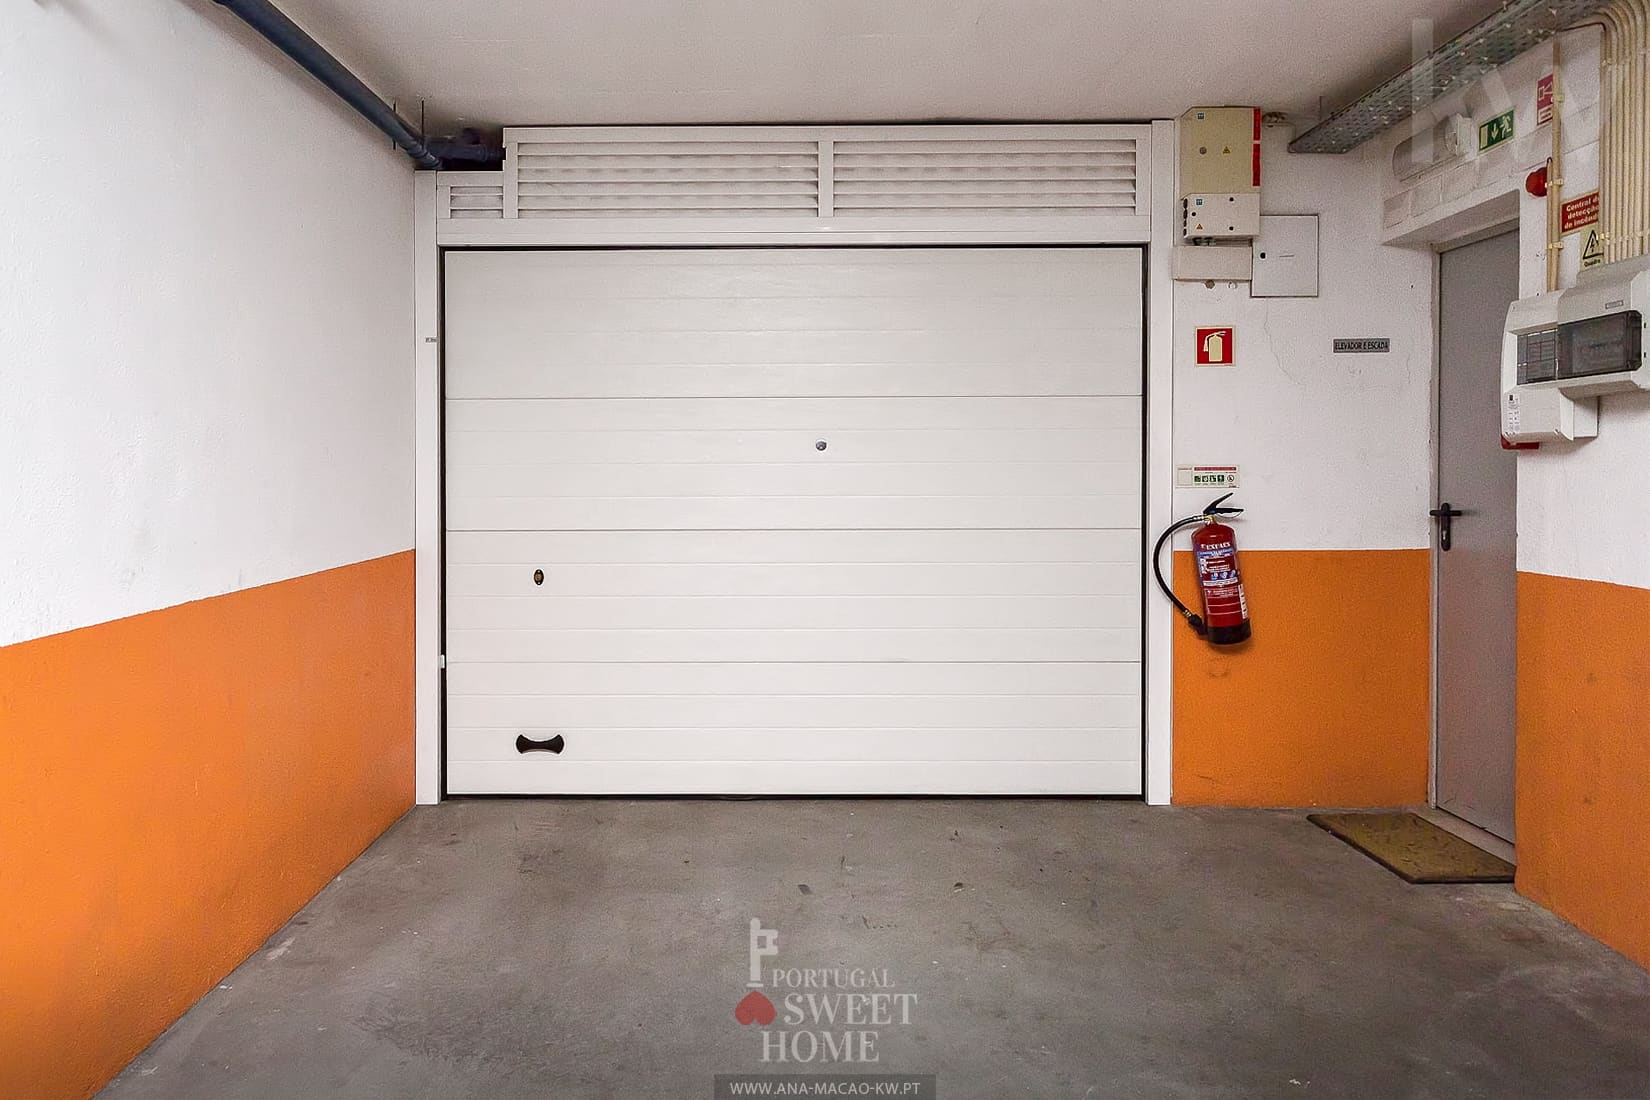 Garage pour 1 voiture (21 m2)